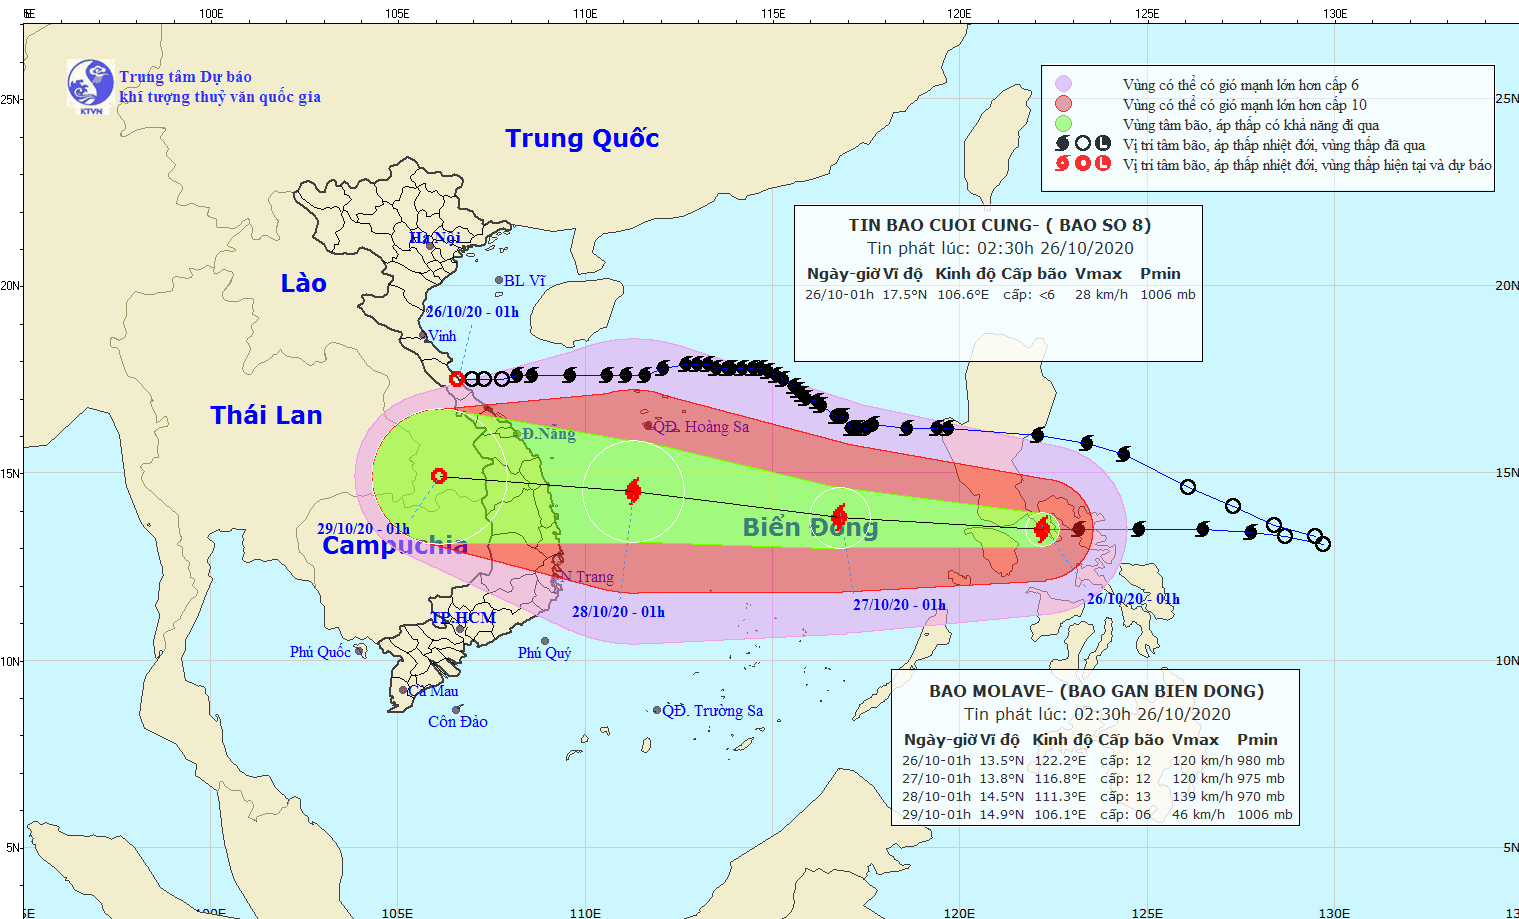 Dự báo thời tiết: Tin cuối cùng về cơn bão số 8, bão mới Molave đi vào Biển Đông